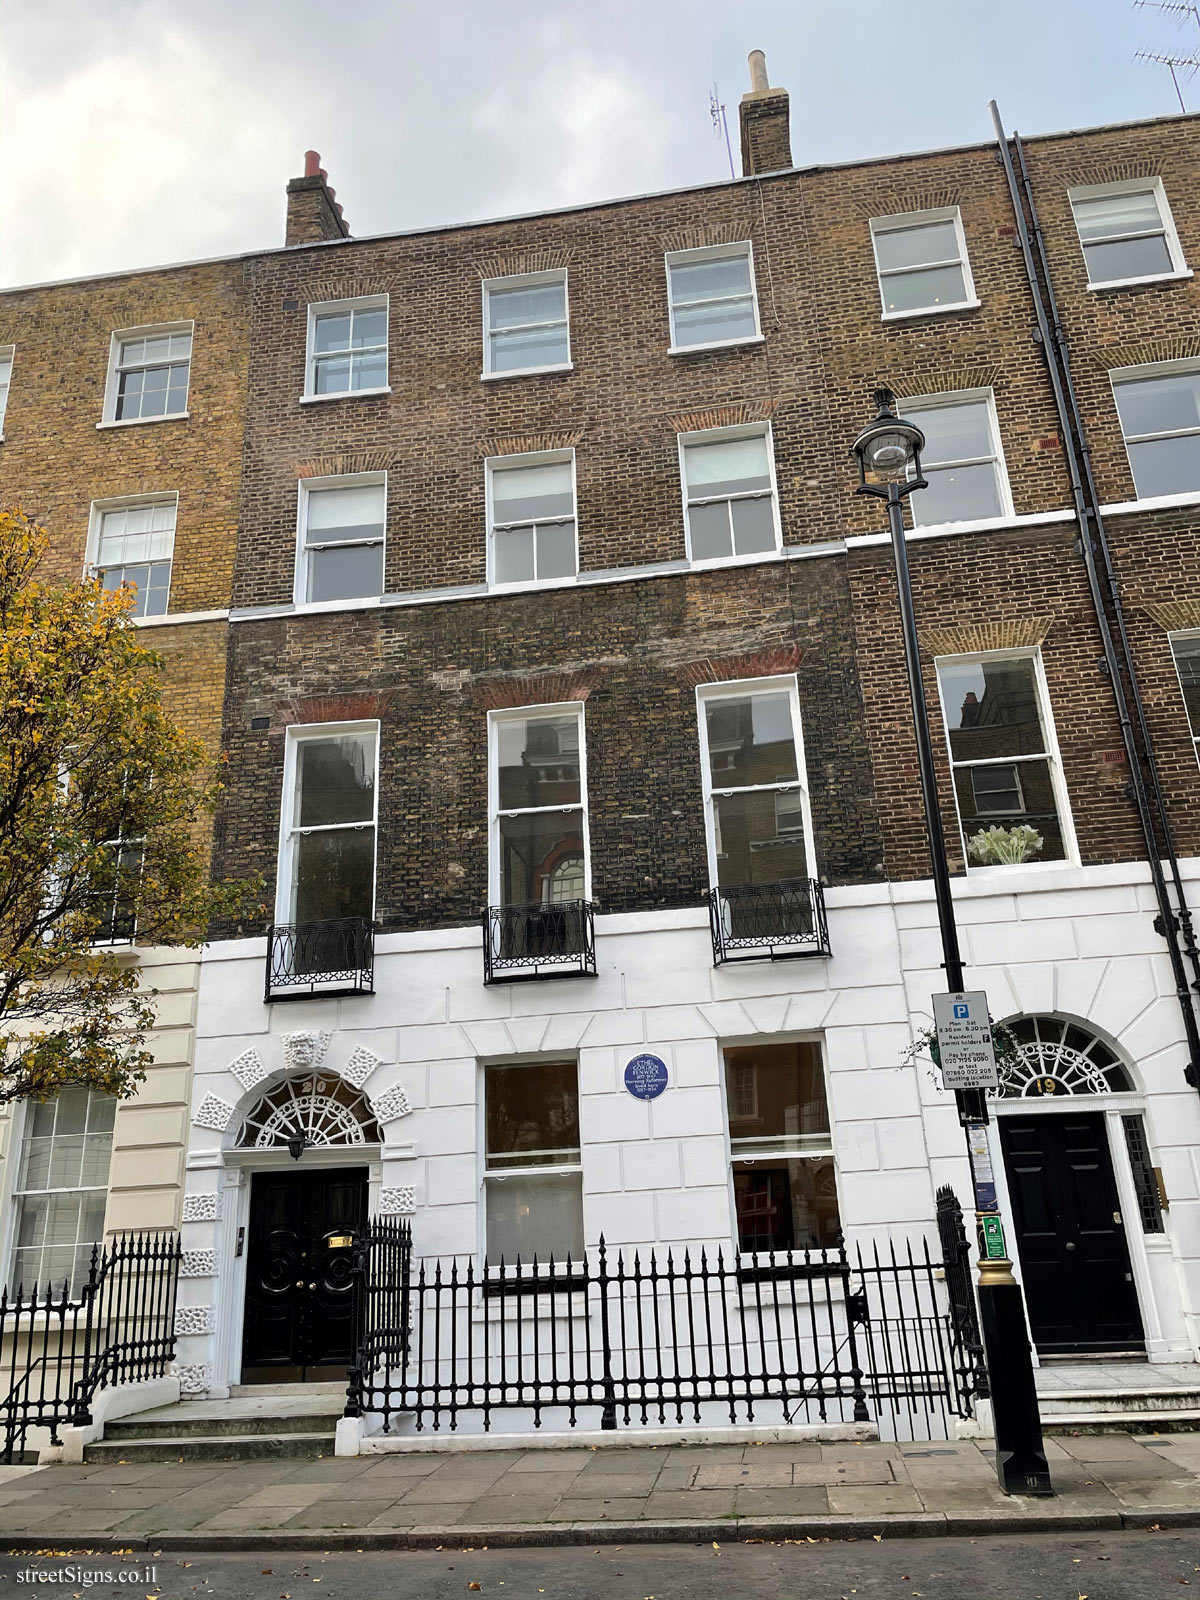 London - English Heritage - The House of Ethel Gordon Fenwick lived - 20 Upper Wimpole St, Paddington, London W1G 6LZ, UK